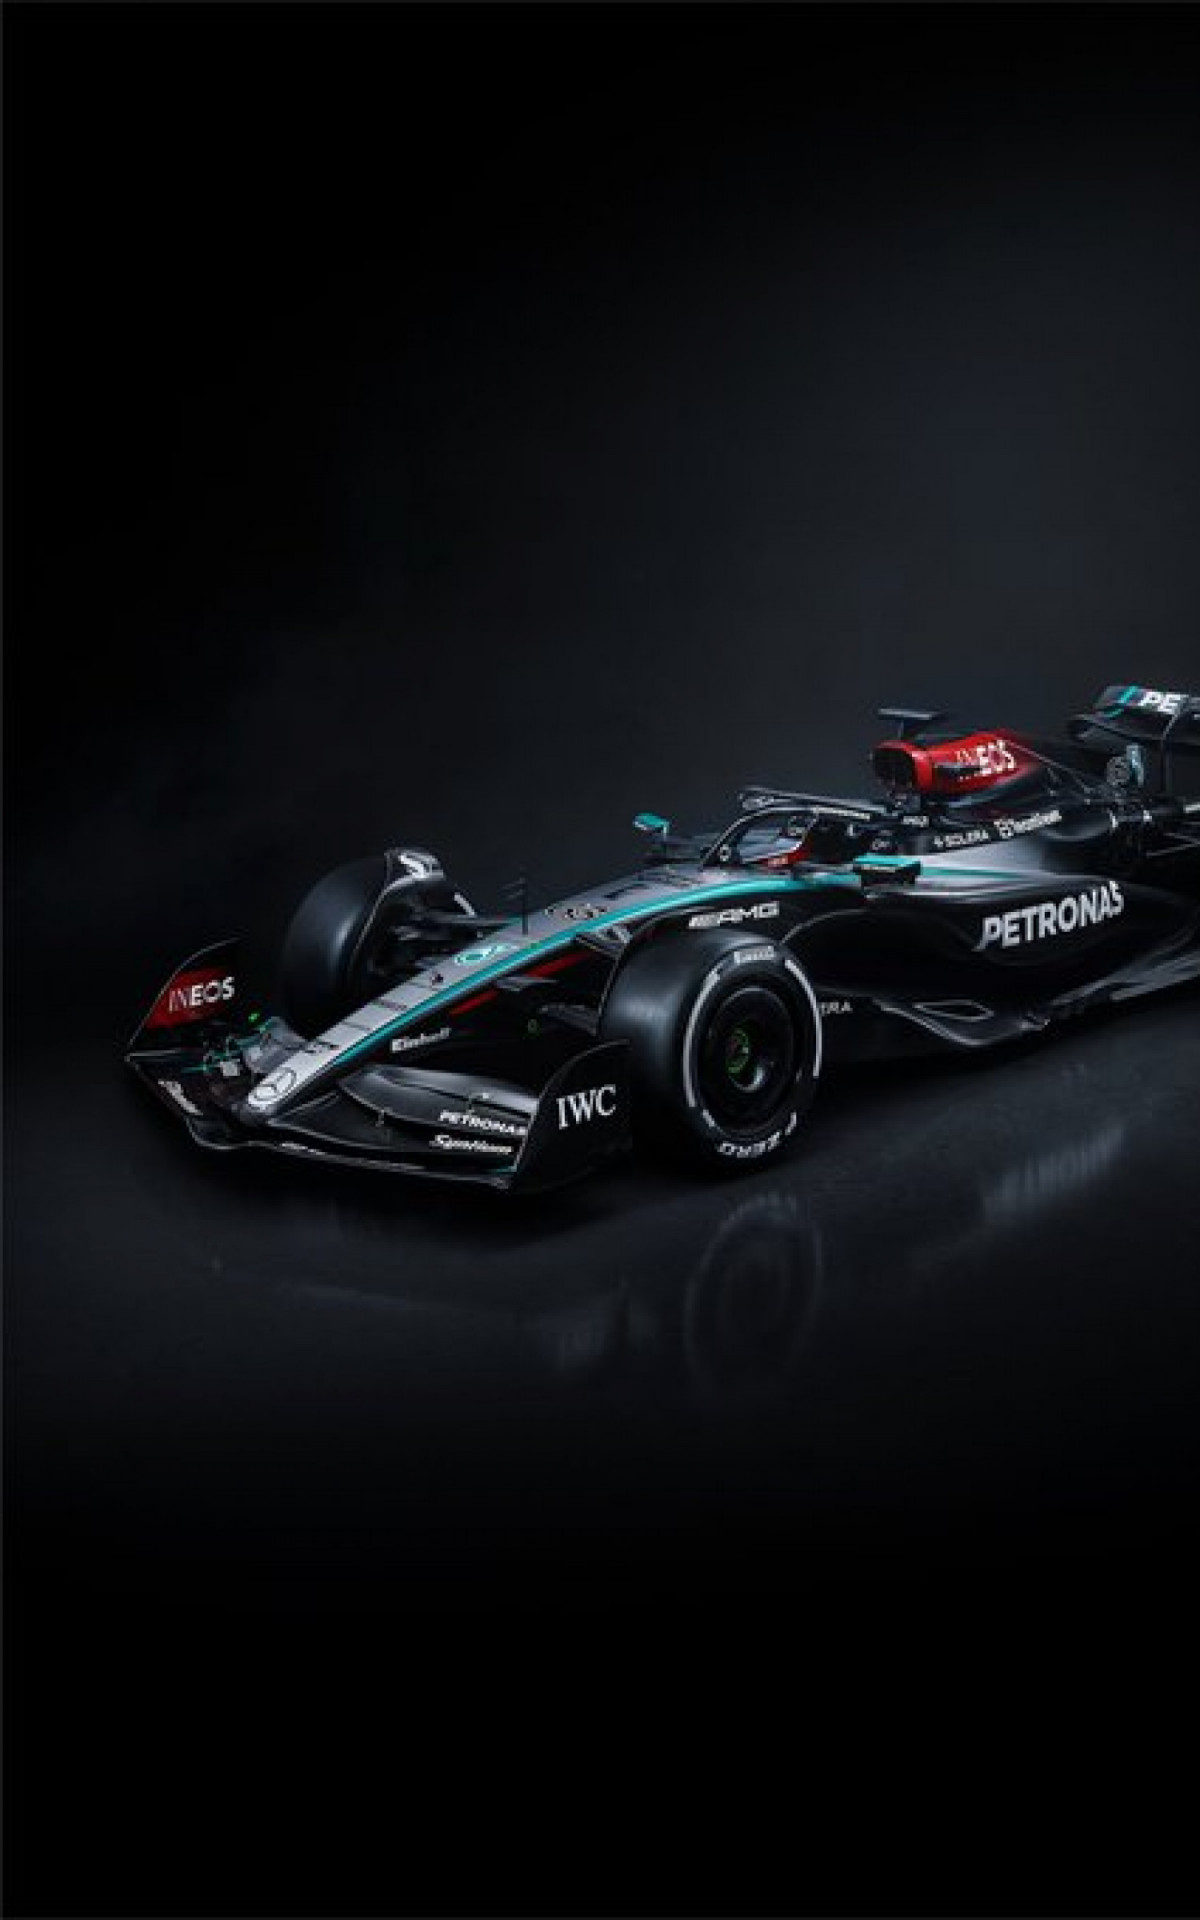 Modelo W15 da Mercedes tem atualizações aerodinâmicas para tentar levar Hamilton de volta às vitórias - Divulgação / Mercedes